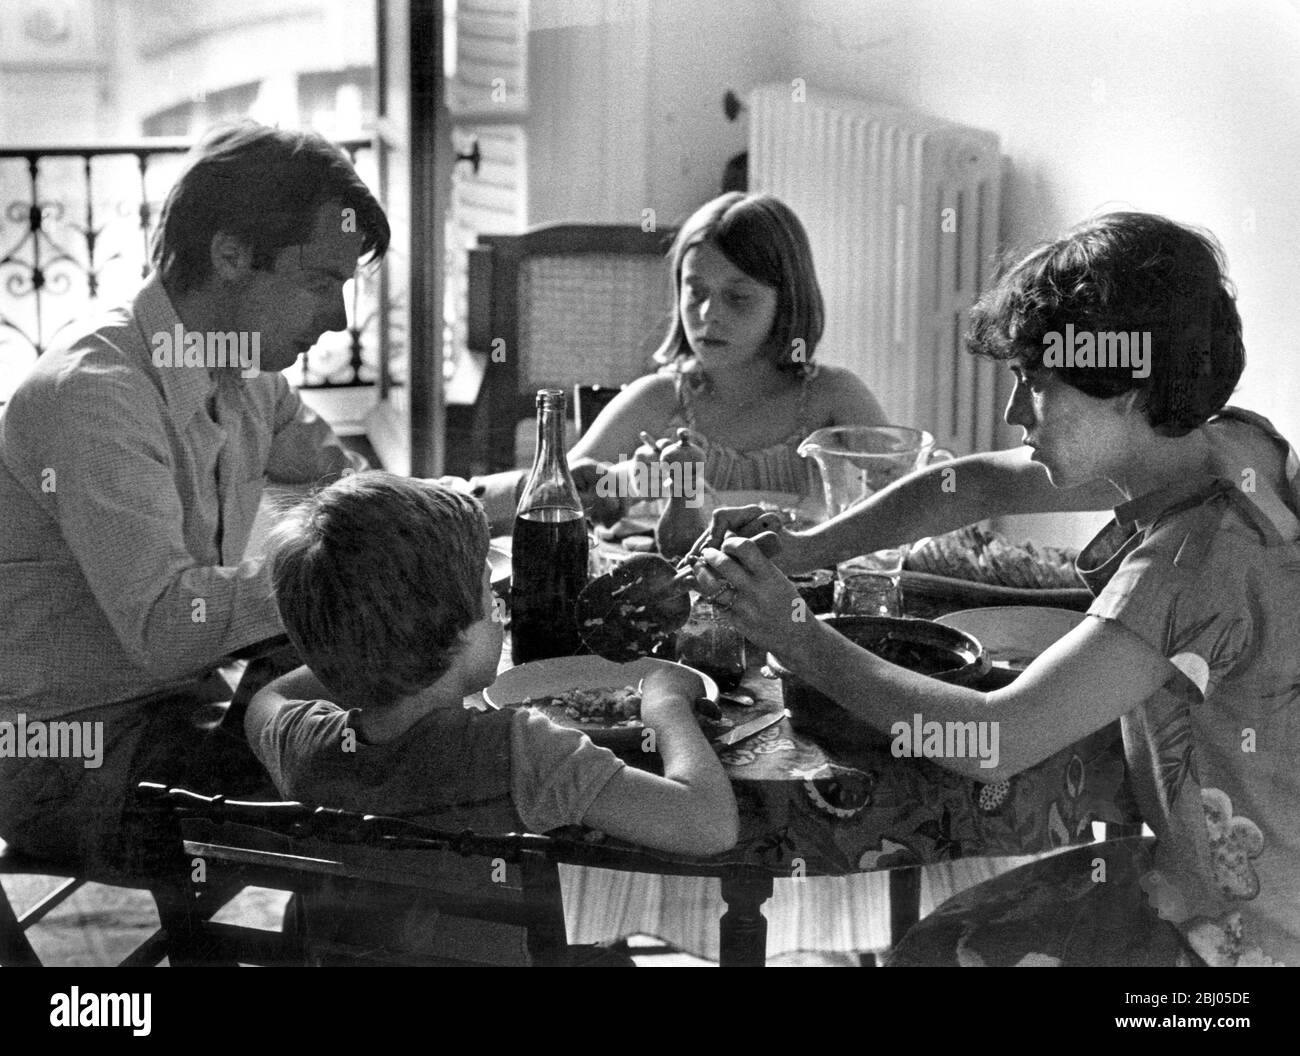 1970's family having dinner Stock Photo